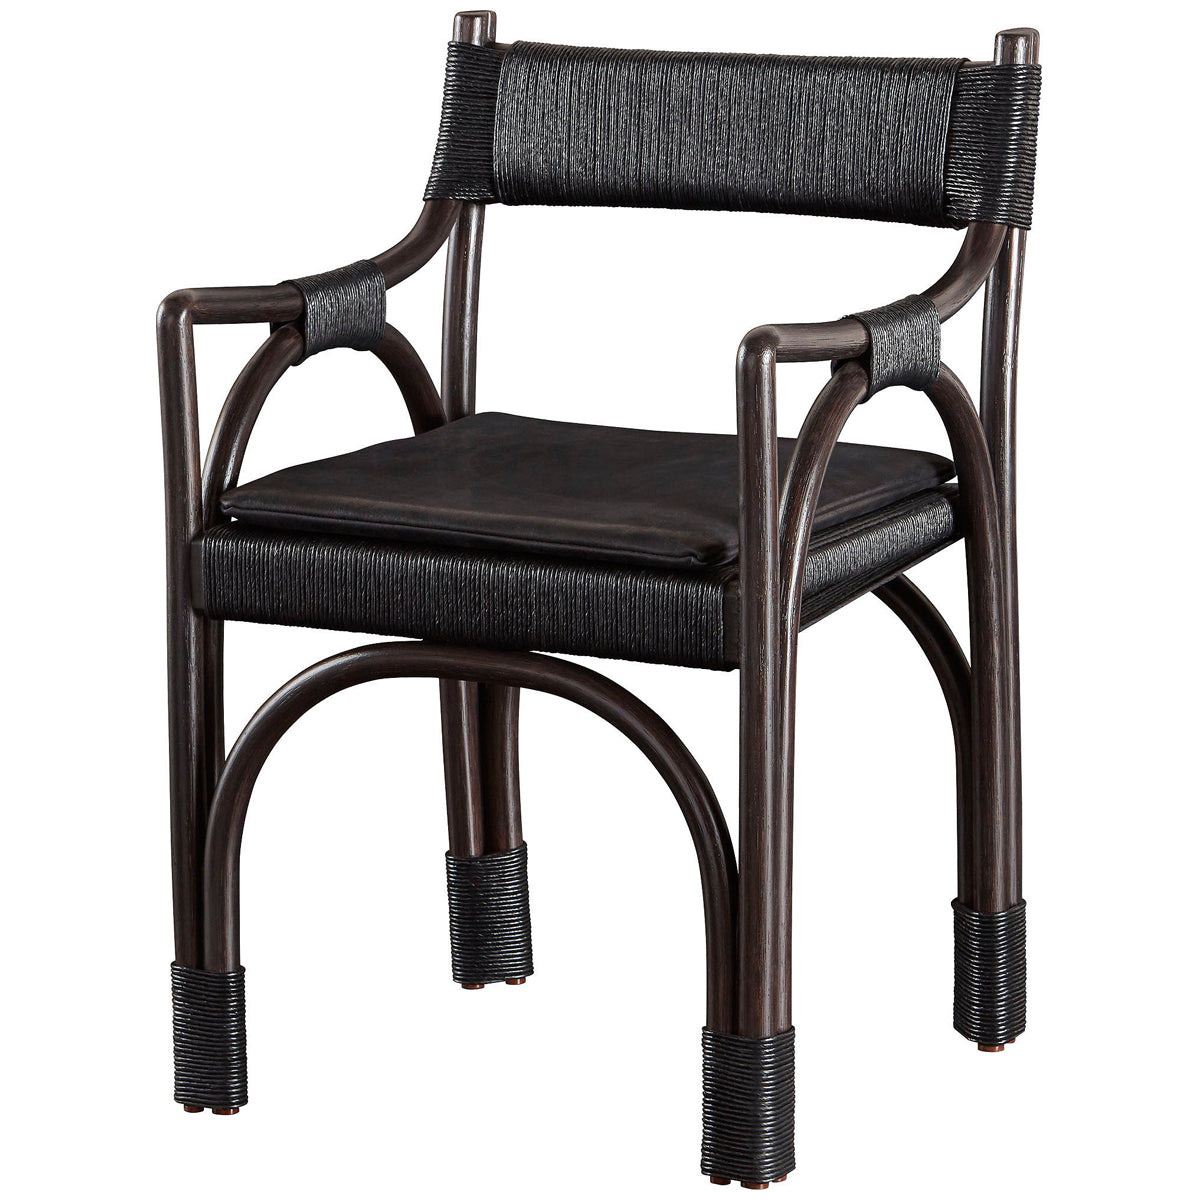 Baker Furniture Bound Arm Chair MCA1543